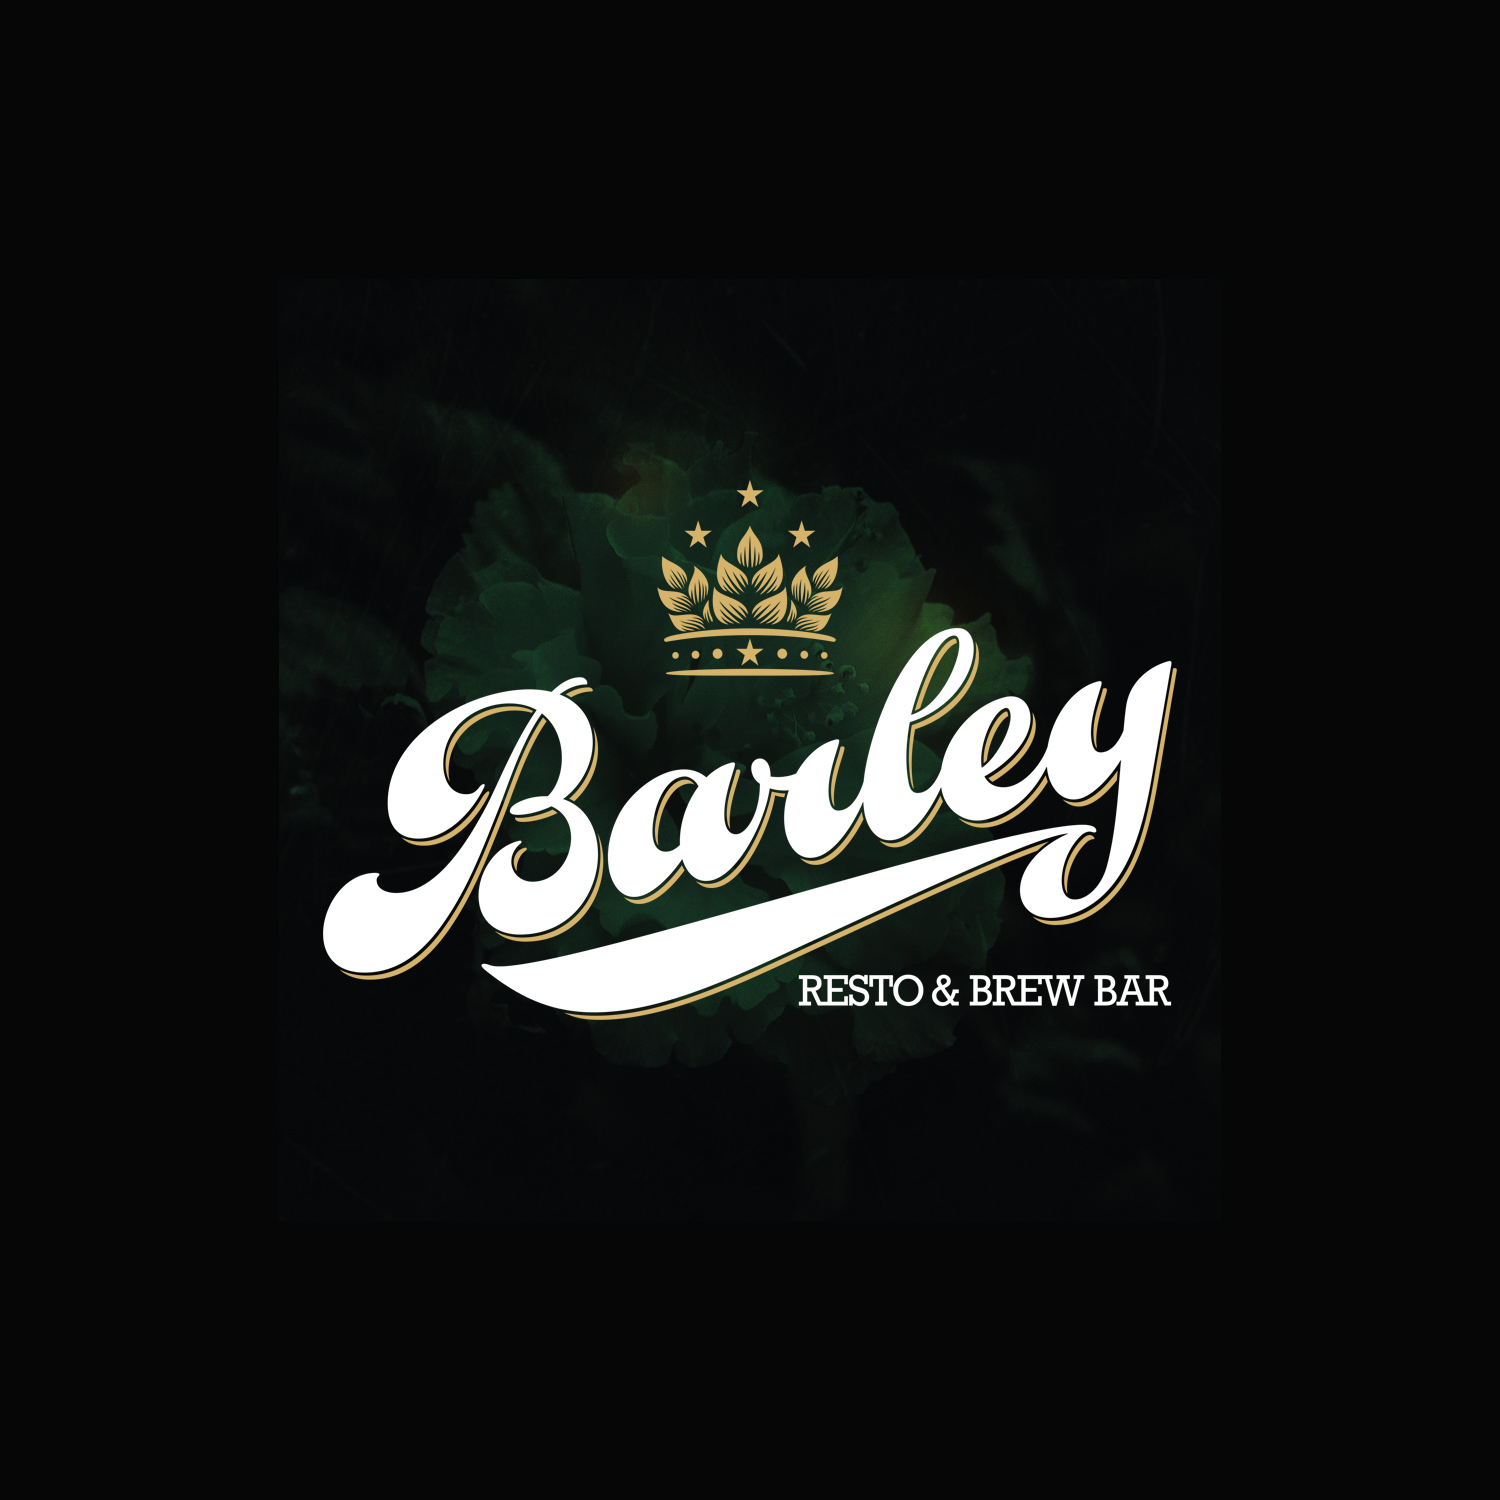 Producción audiovisual para Barley resto & brew bar by UMM ideas SA